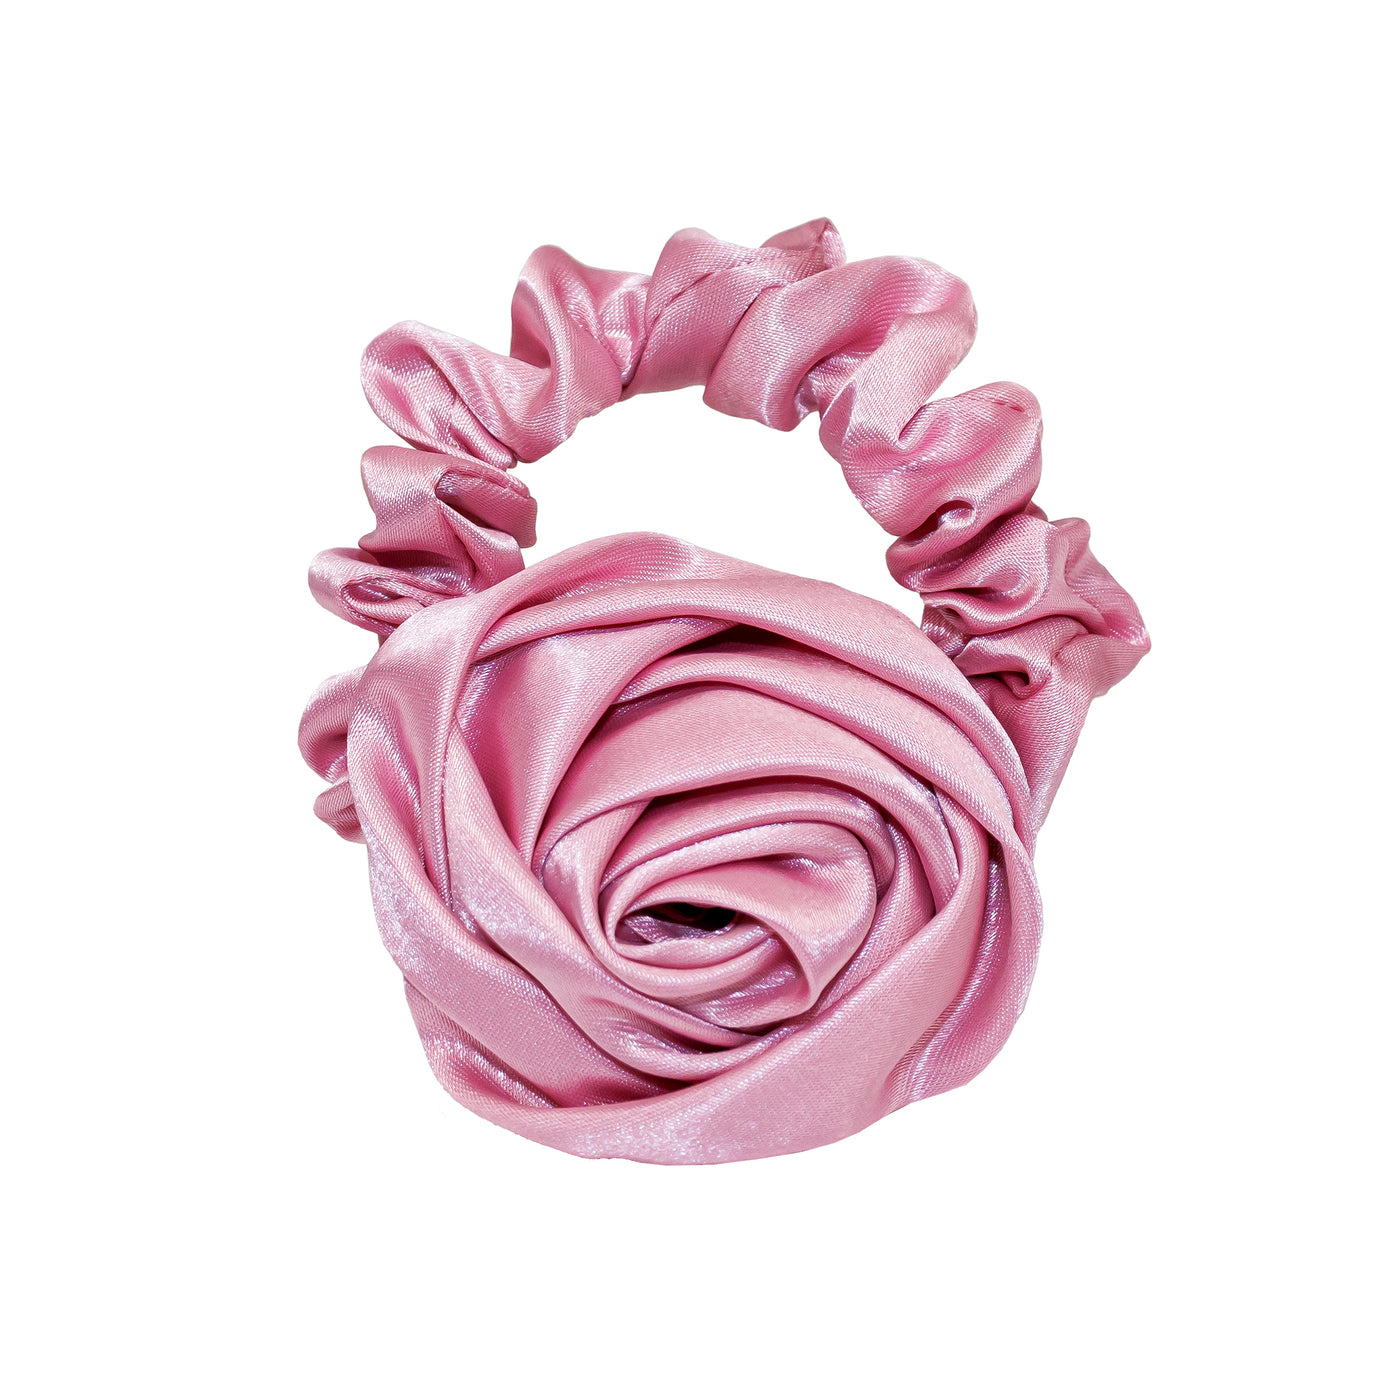 Rosette Scrunchie in Candy Pink